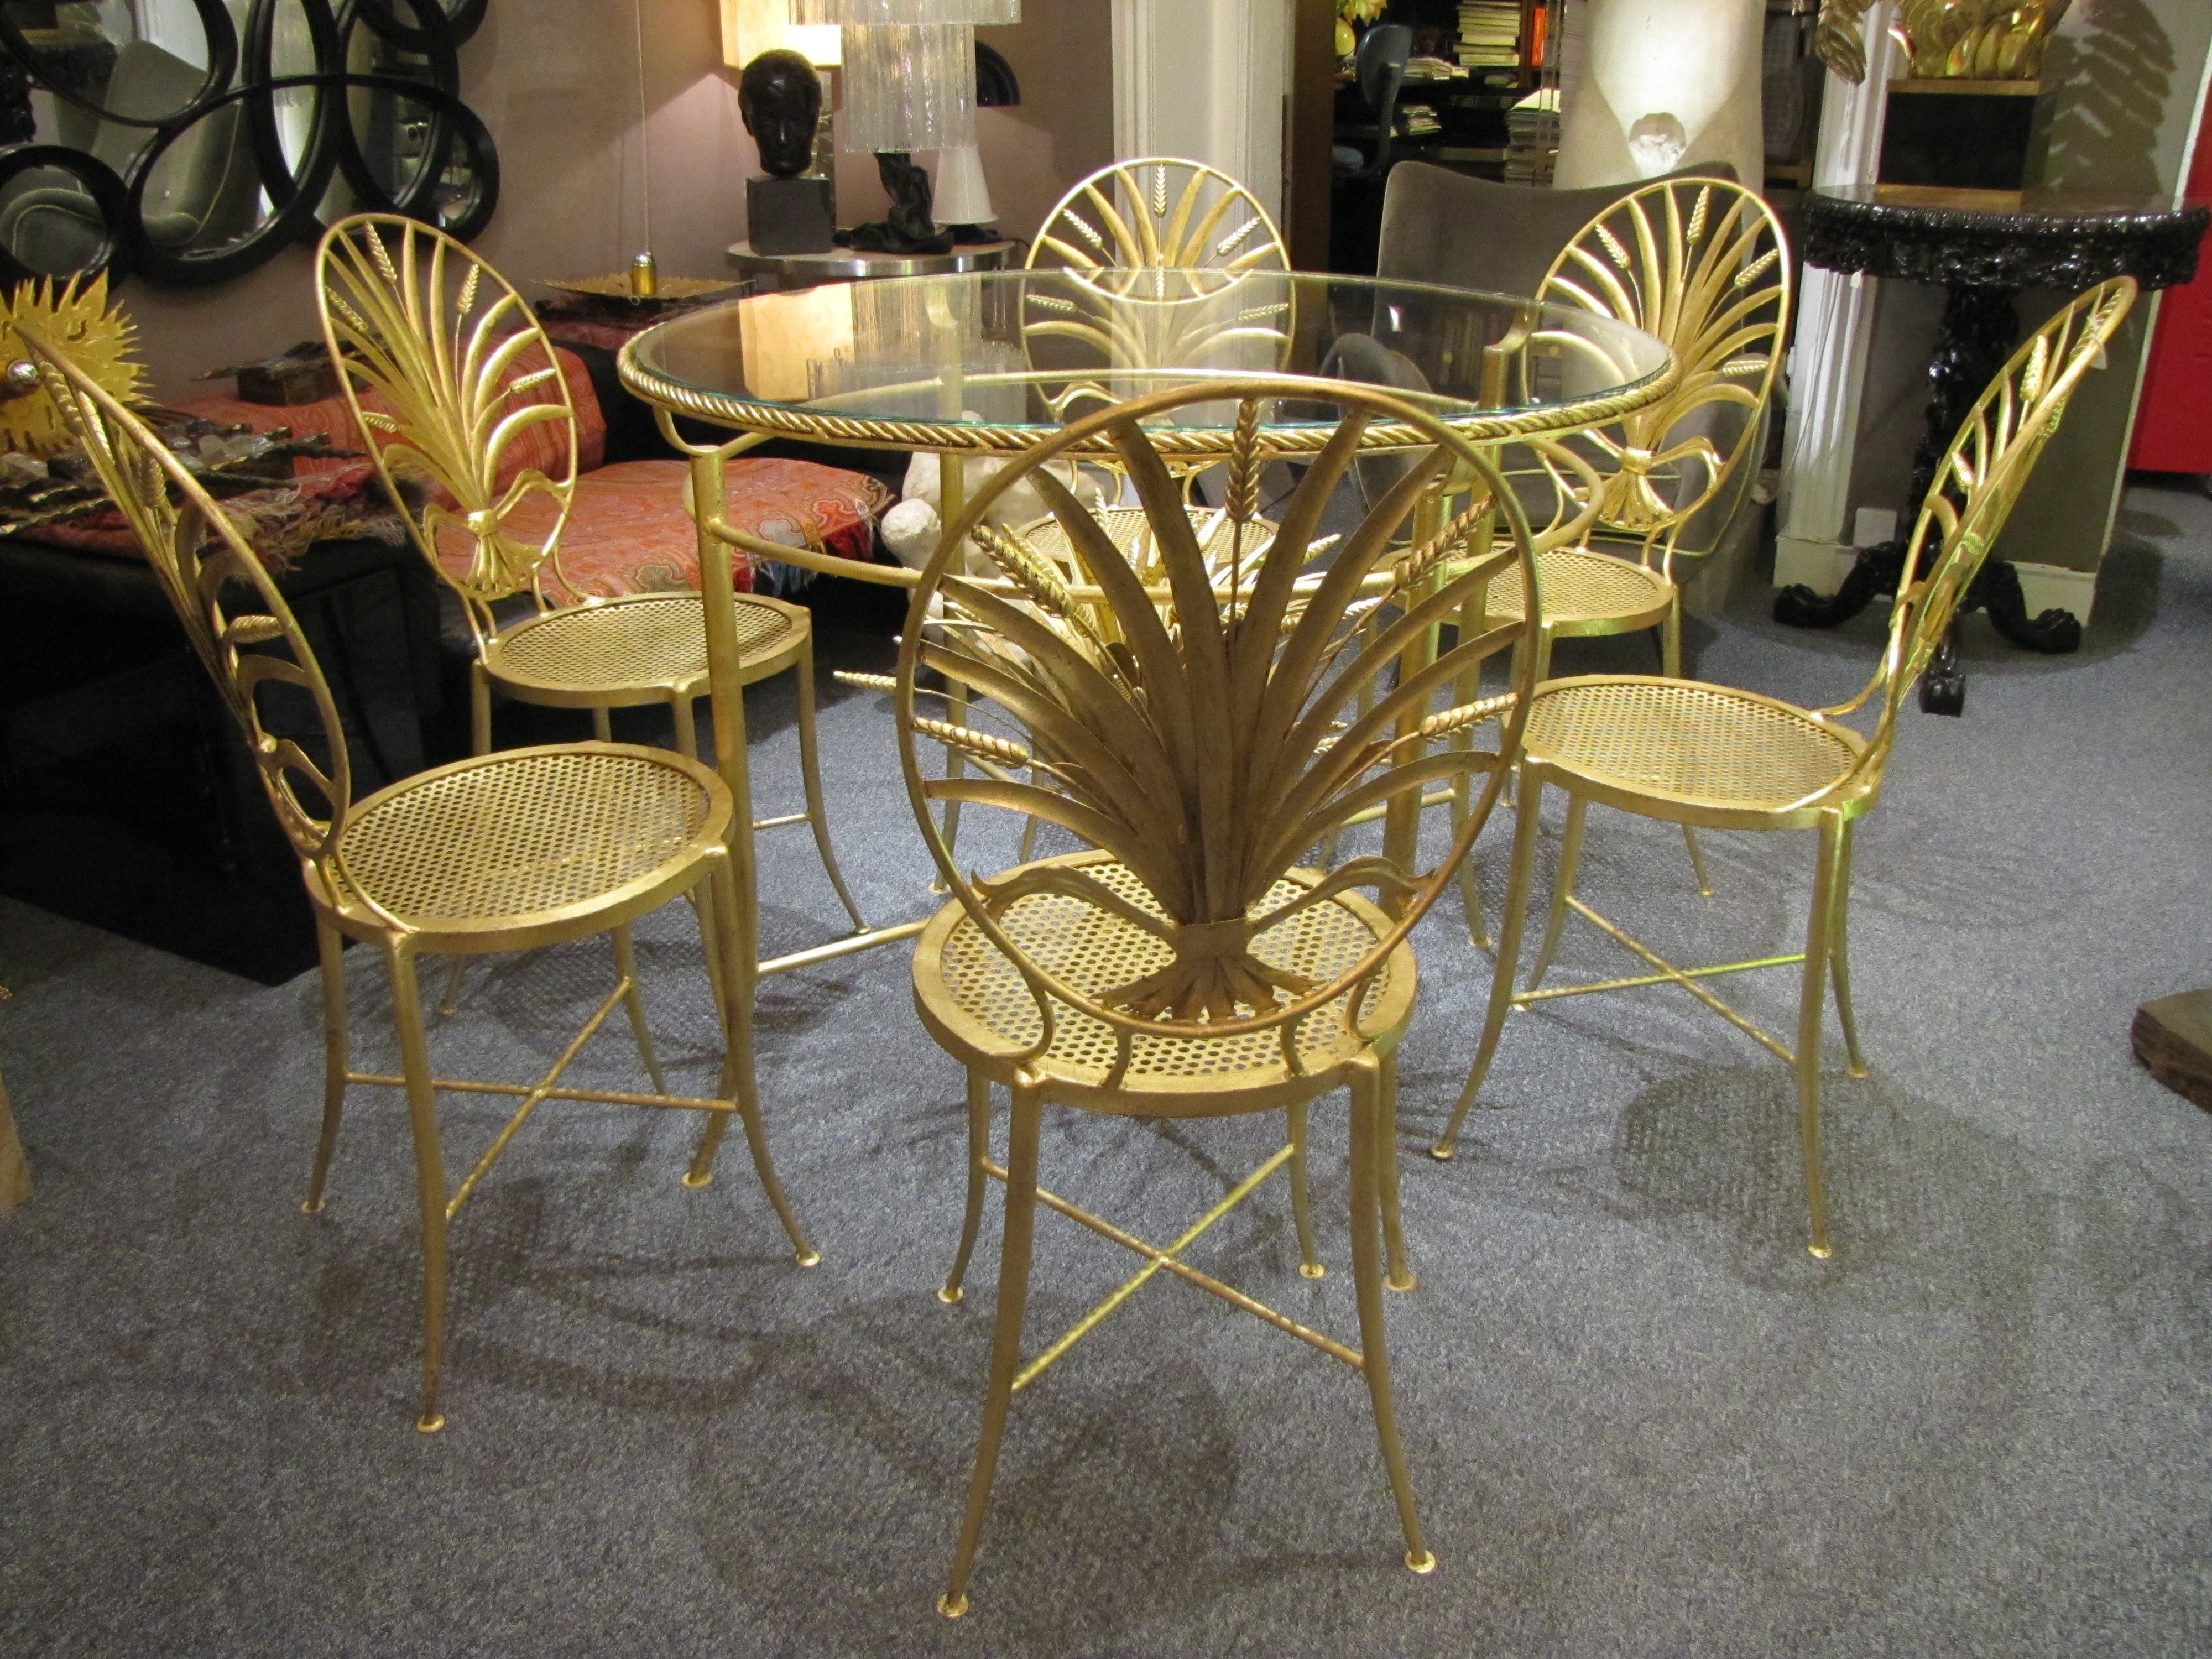 Rare ensemble de table et de six chaises italiennes des années 1960 avec des dossiers minutieusement détaillés, dans le design d'une gerbe de blé. Il repose sur de superbes pieds minces avec brancards en X, finition italienne classique en or doré.